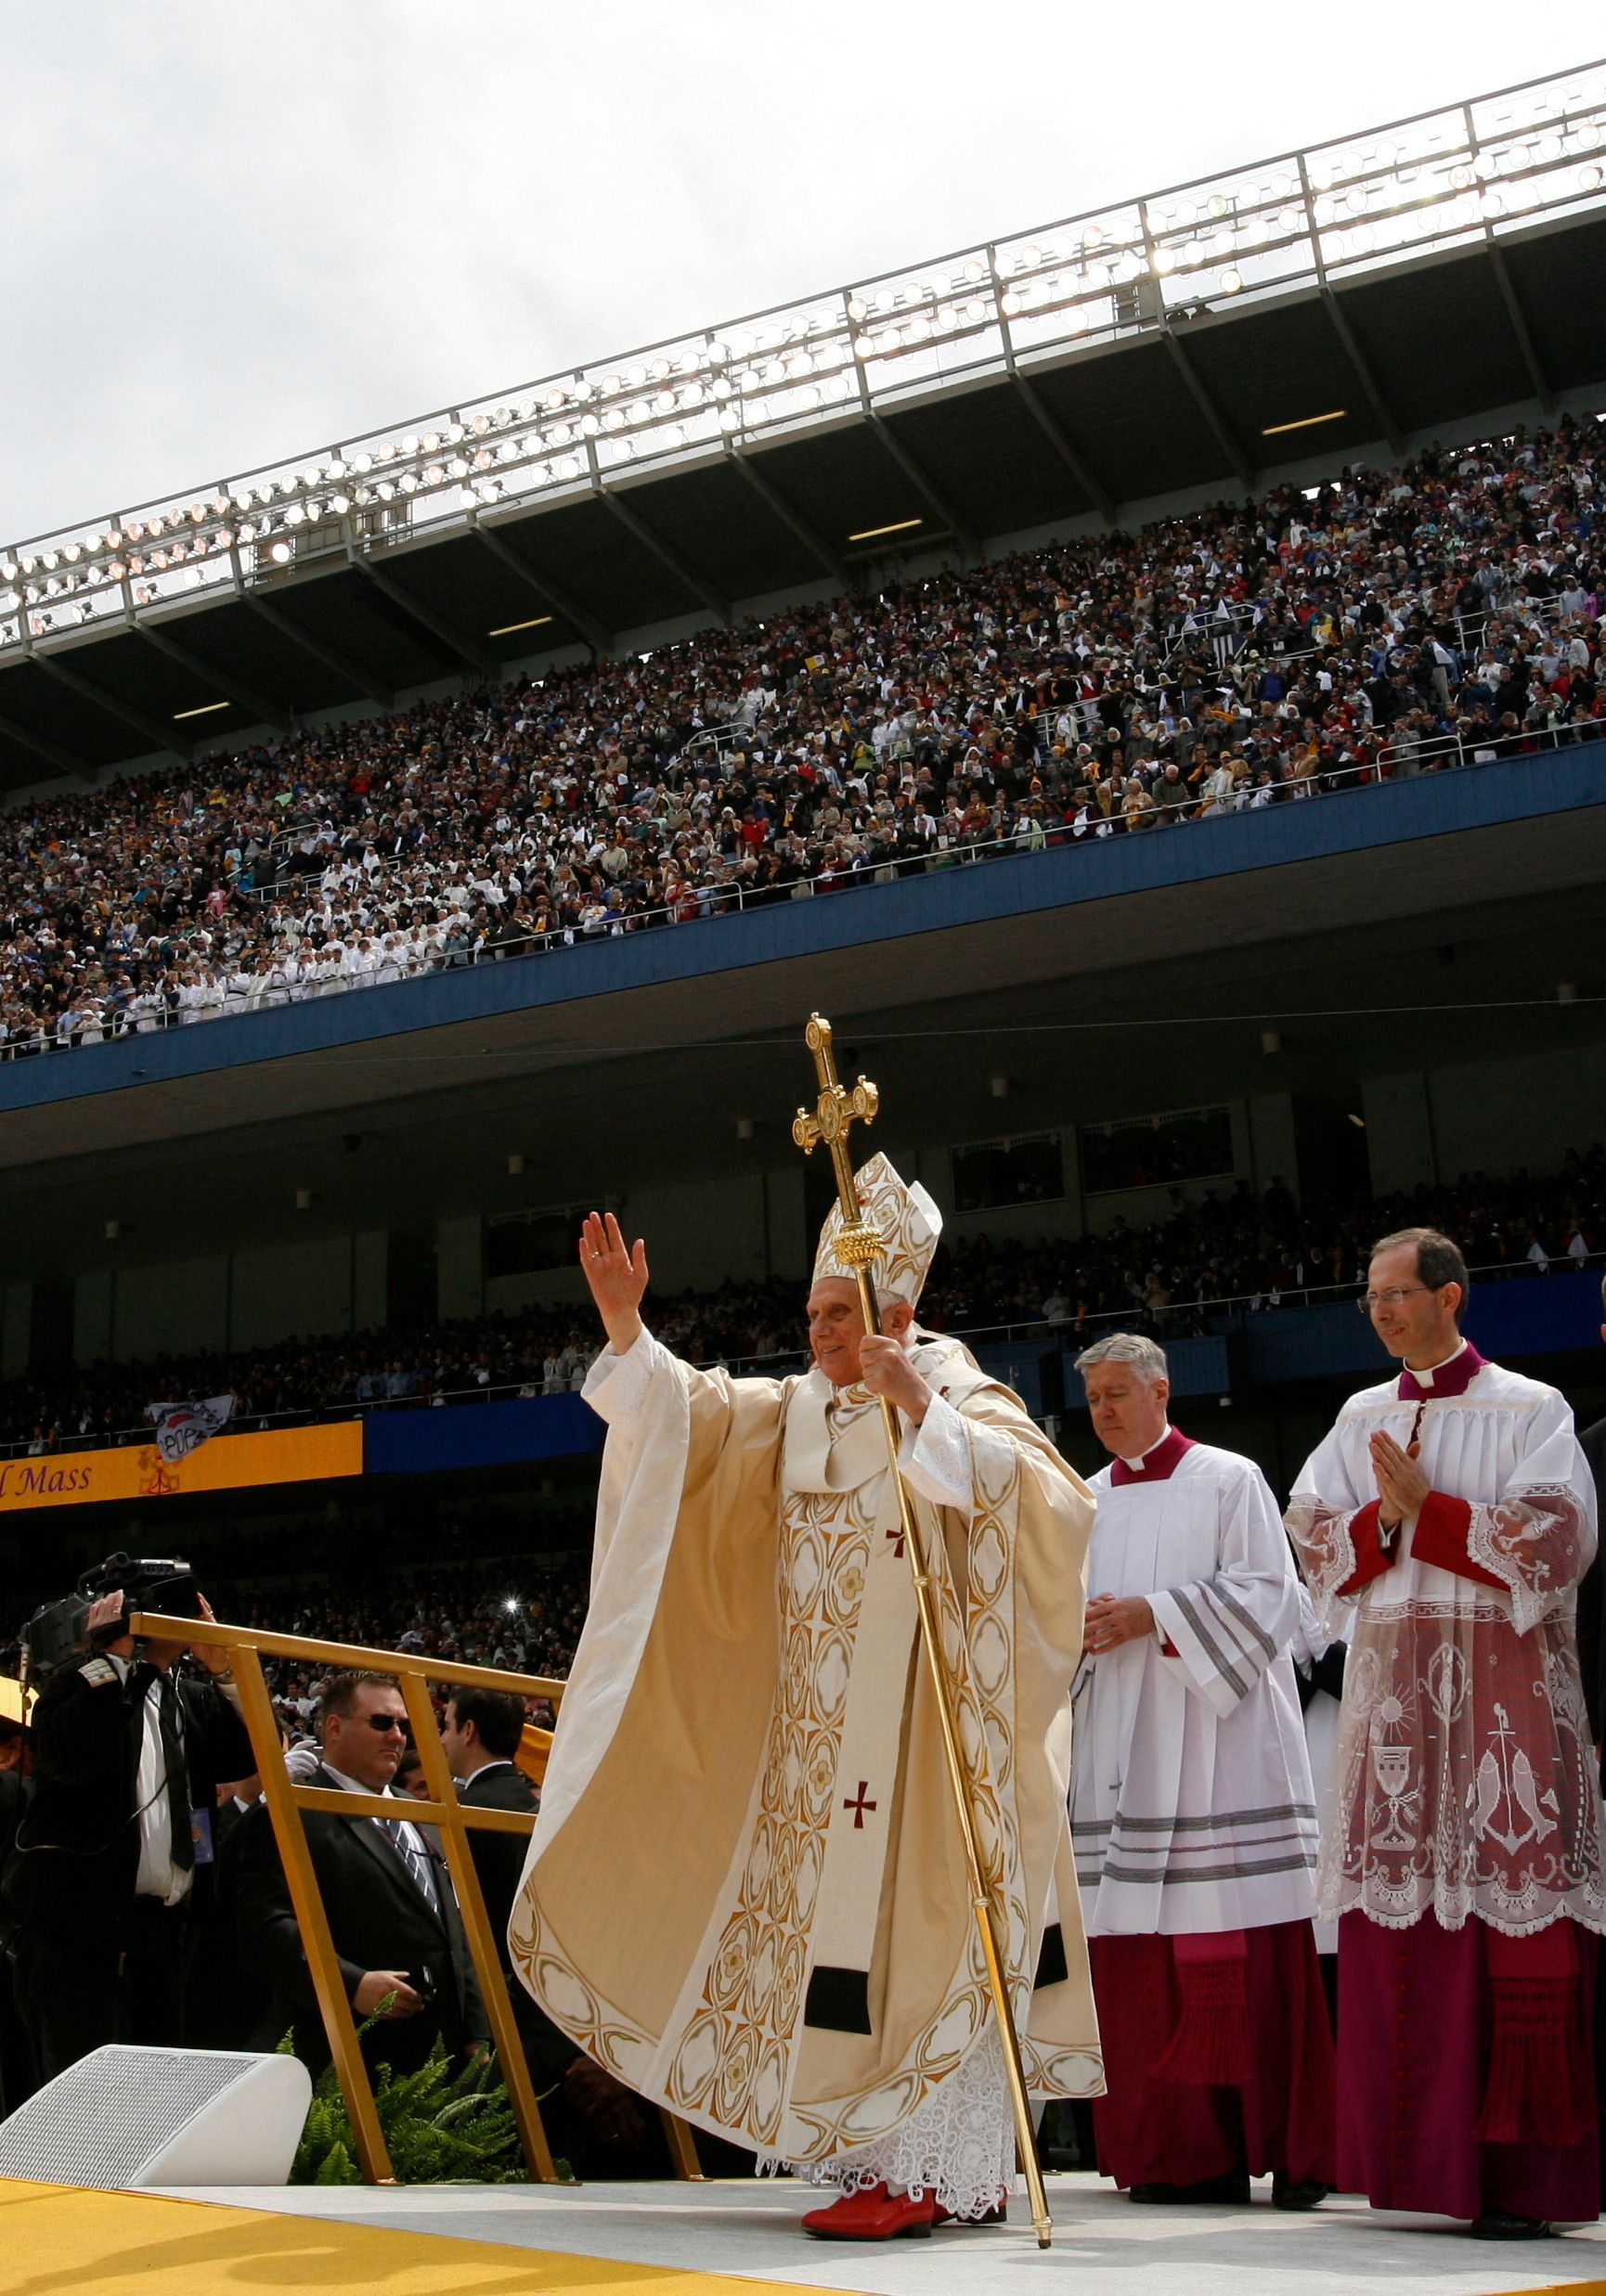 Um im Yankee Stadium in New York eine Messe zu feiern betritt Benedikt XVI. die Bühne.